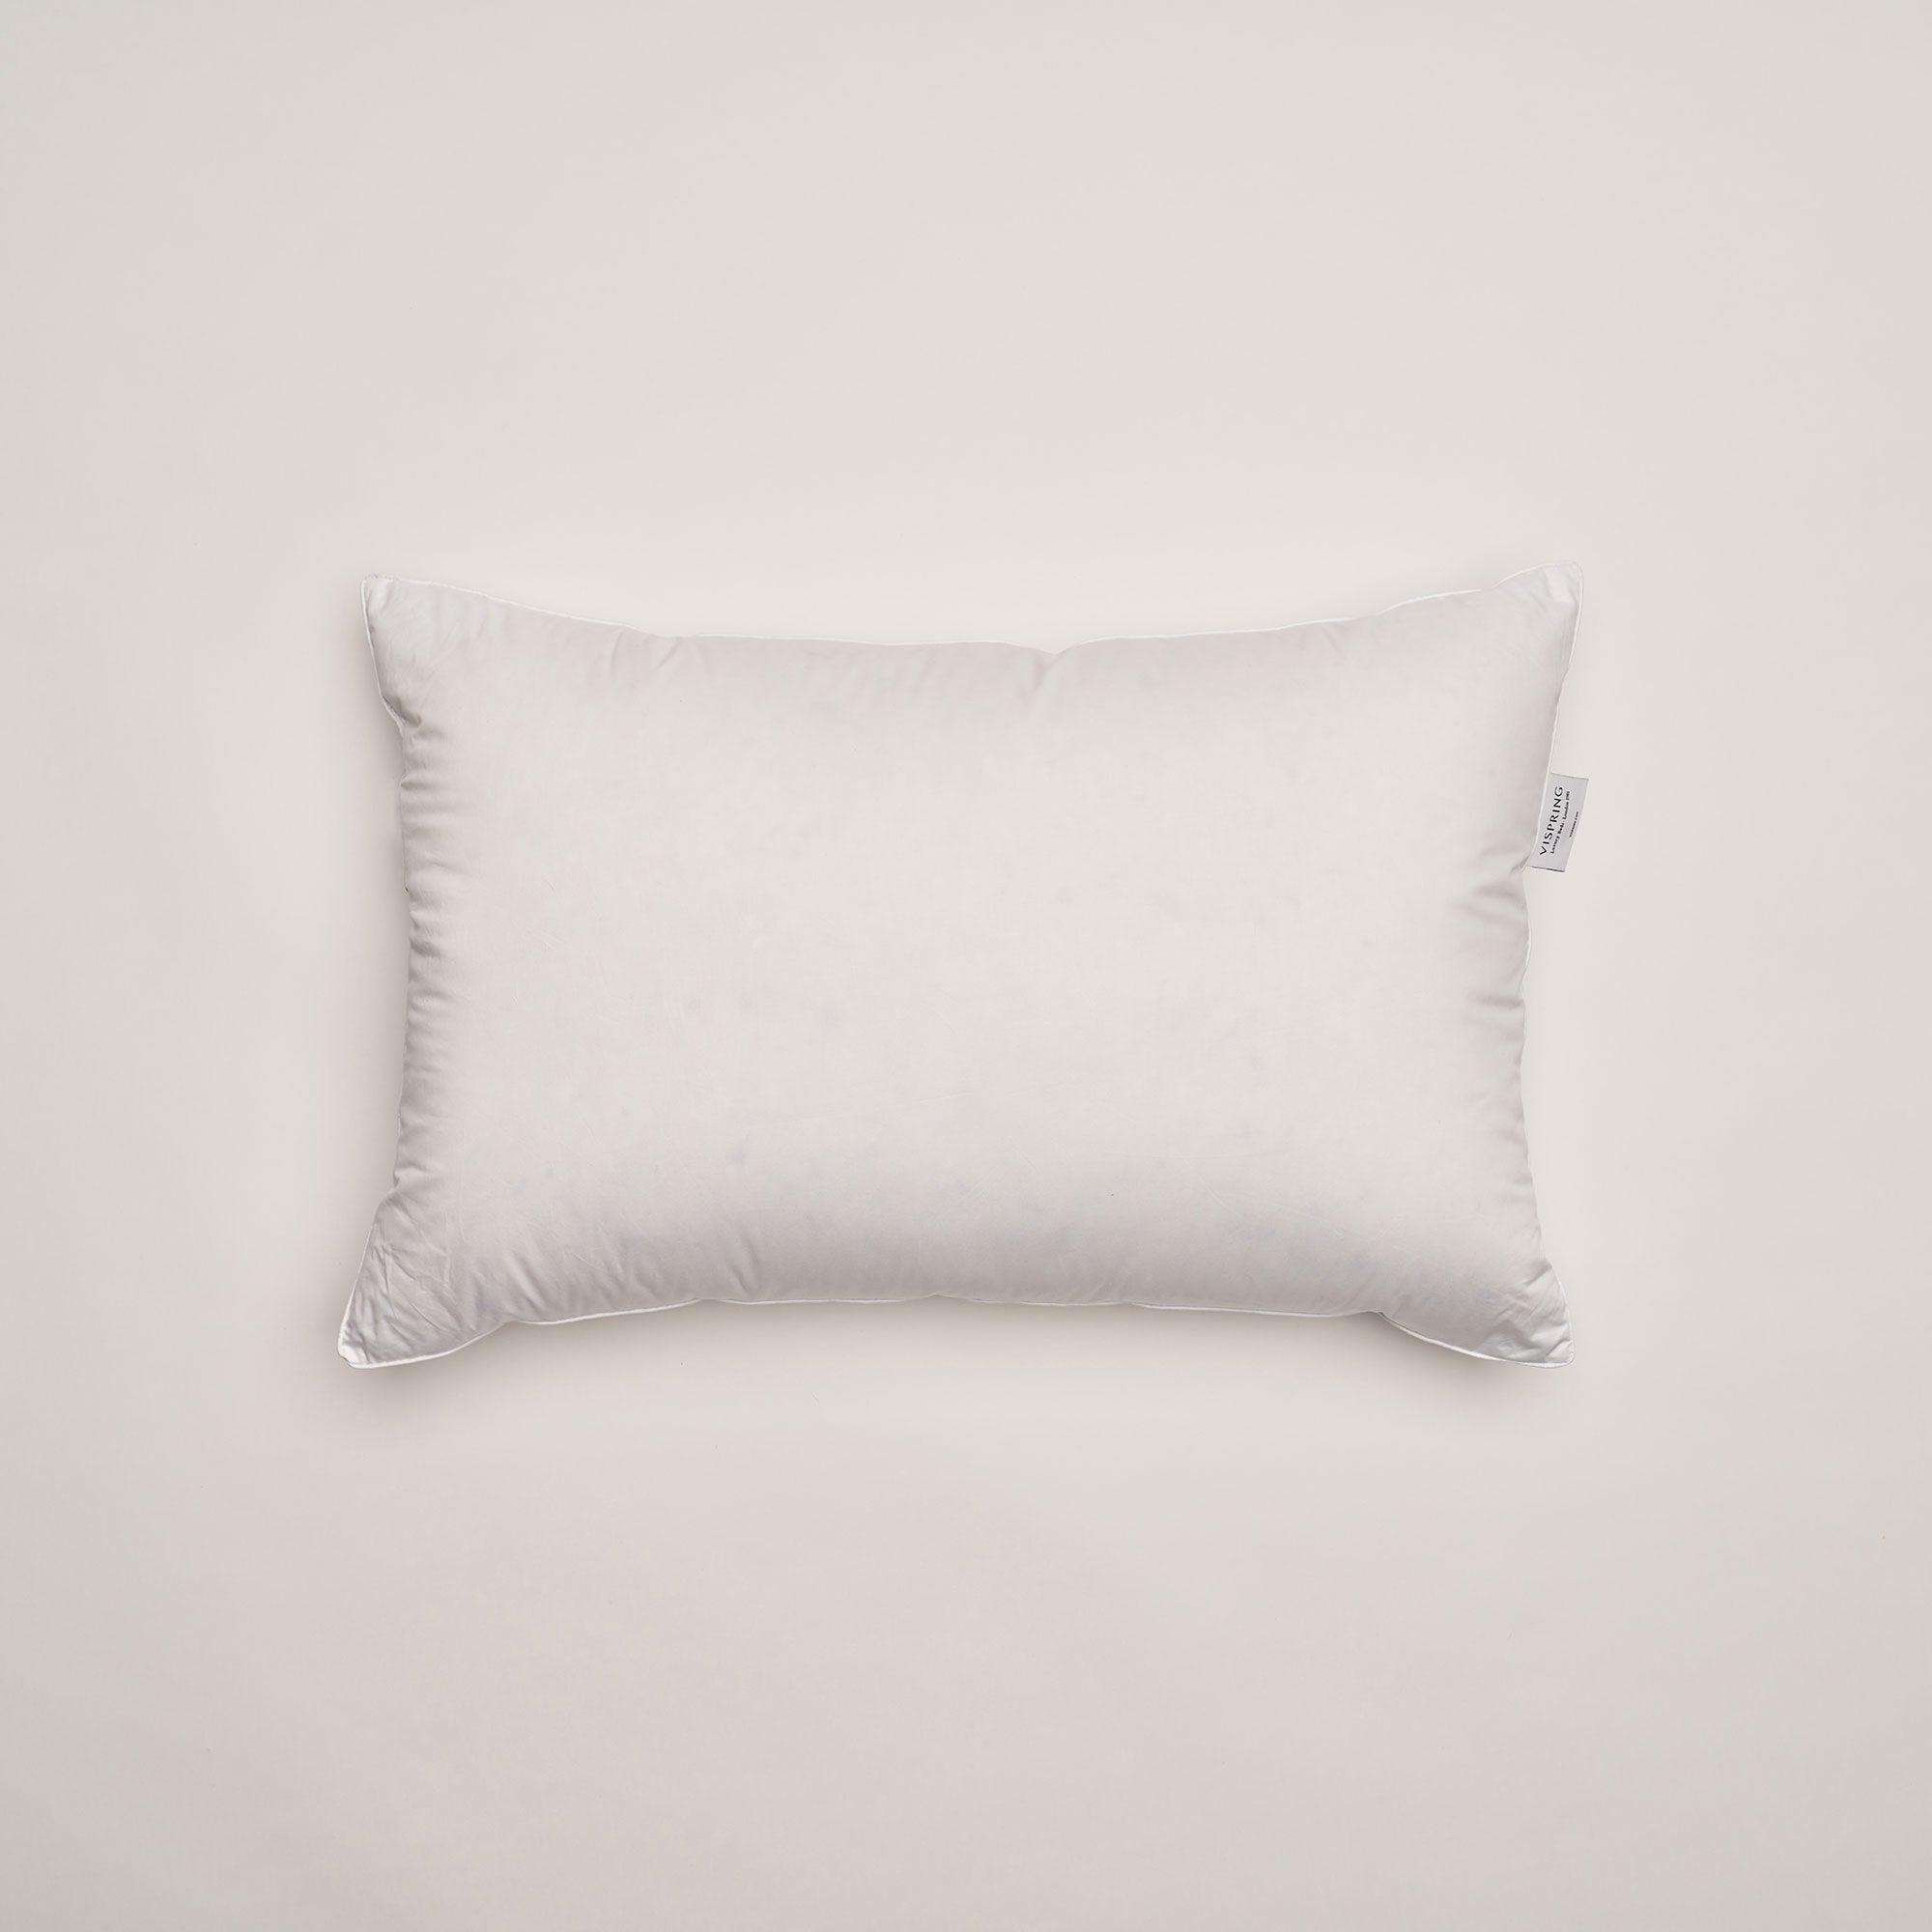 Vispring Pillows - Hungarian Goose Down & Feather Pillow 75 x 50cm